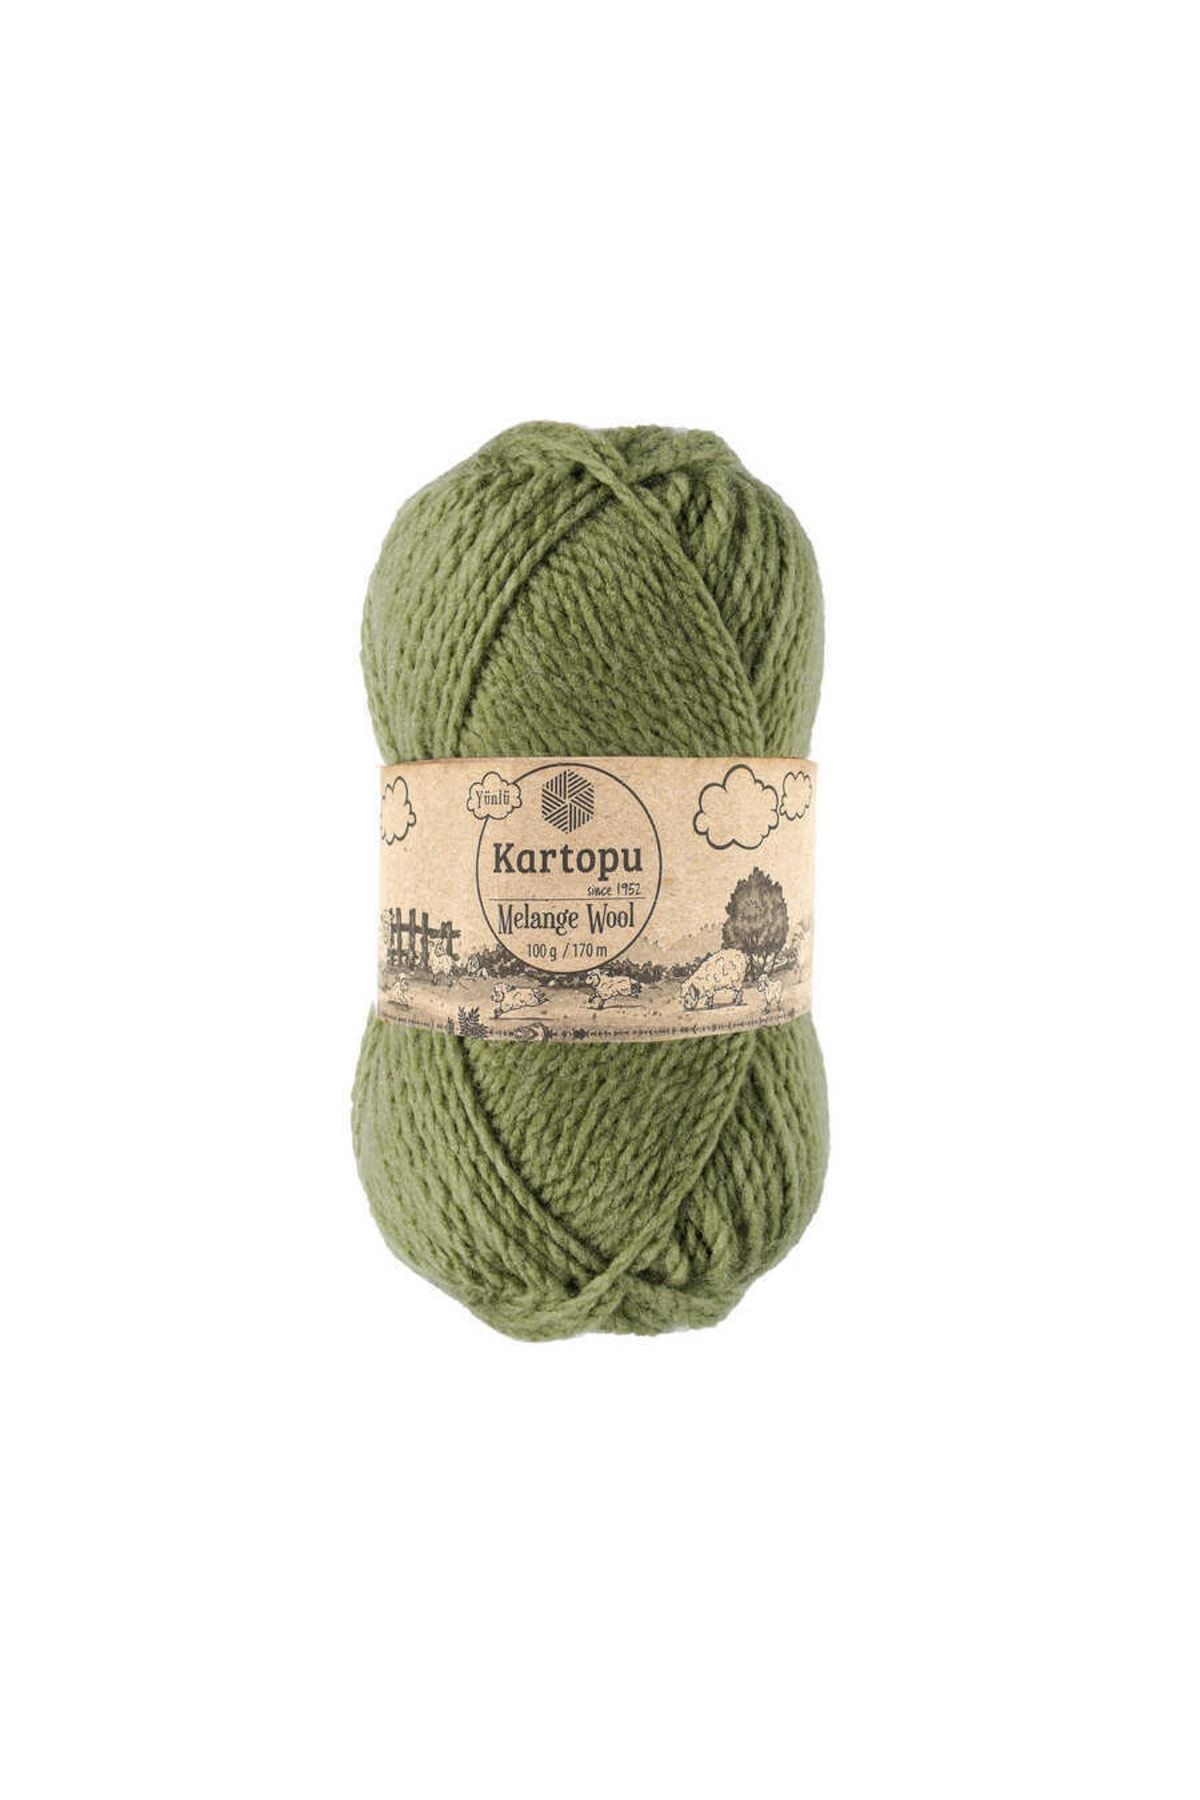 Kartopu Melange Wool K430 5 Adet Yünlü El Örgü Ipi Çağla Yeşili